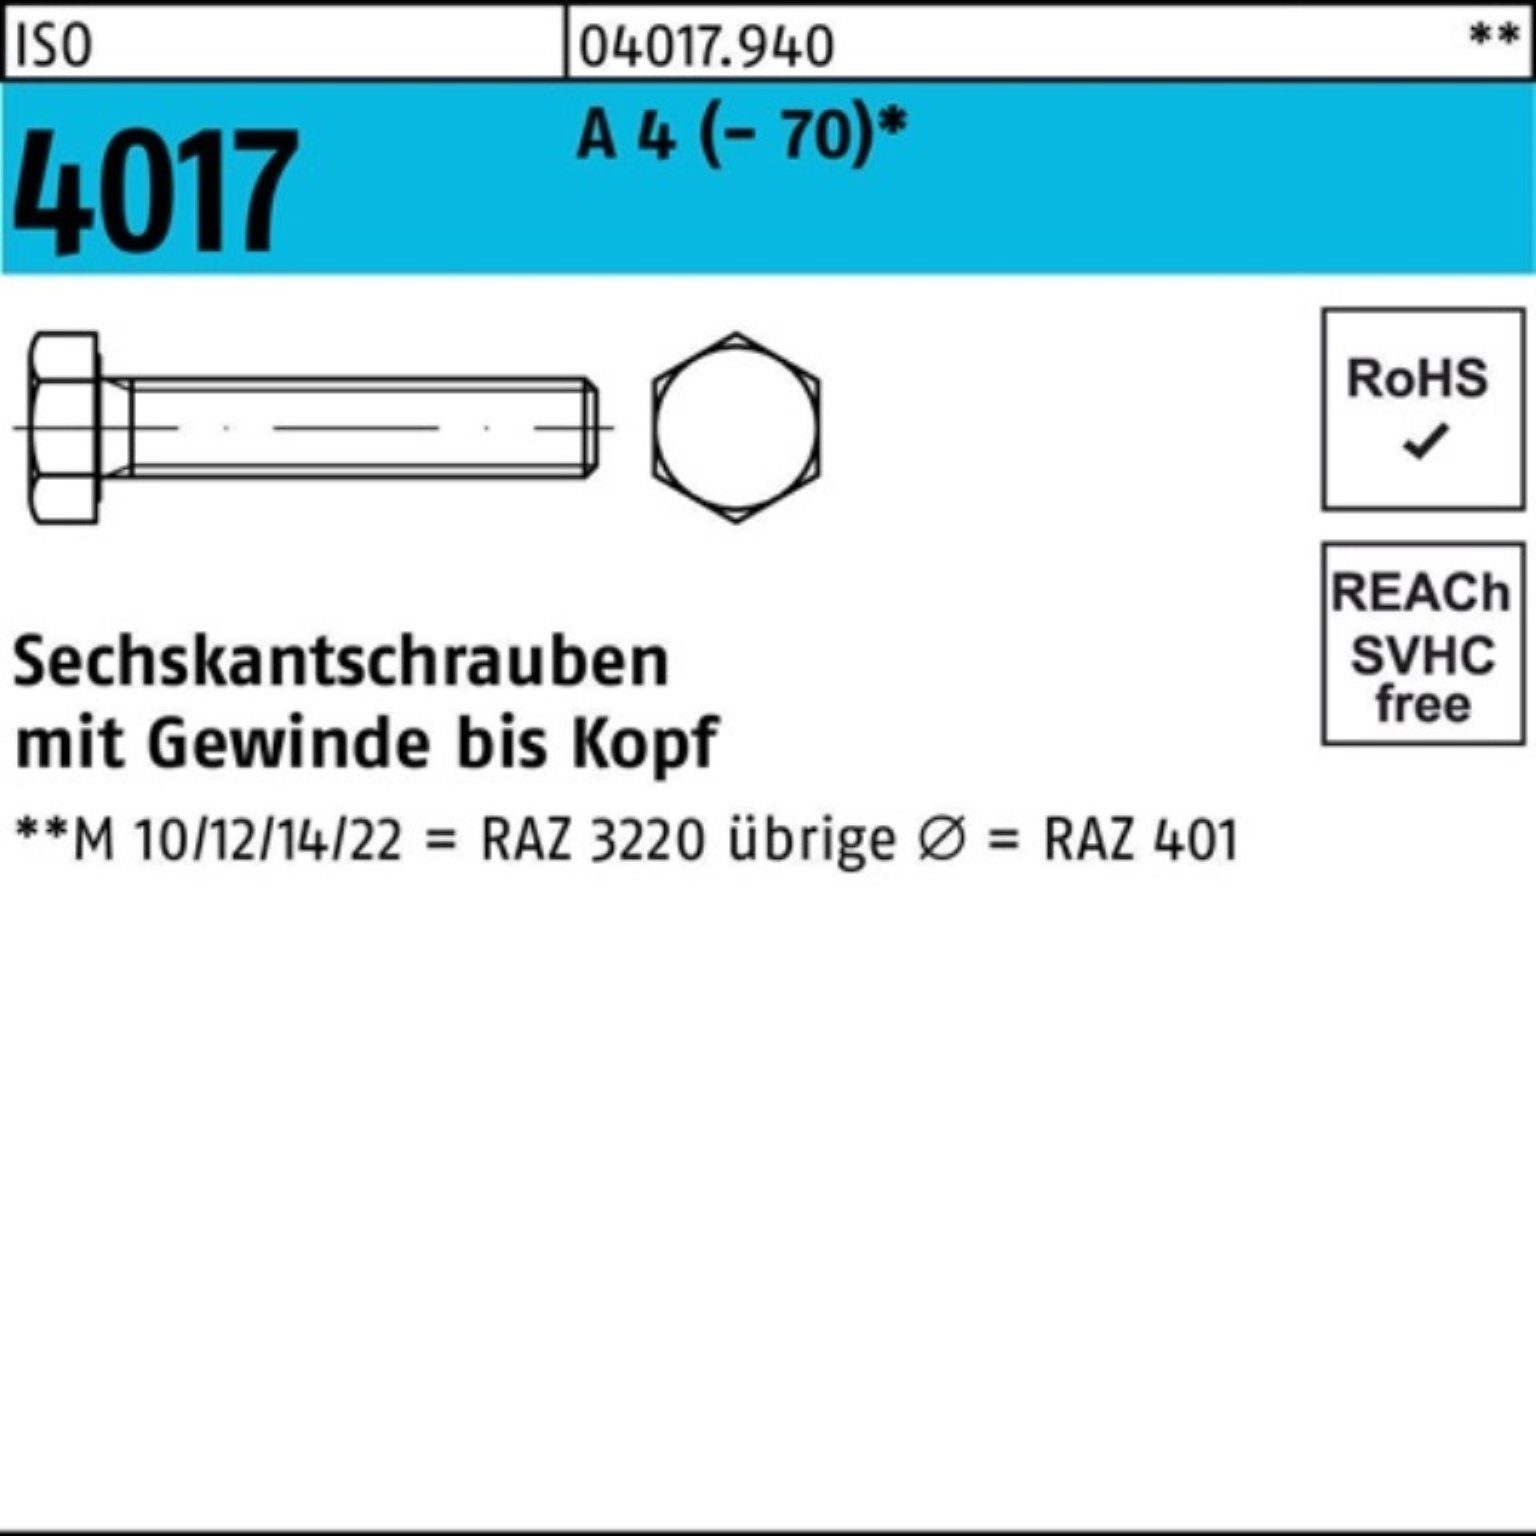 Bufab Sechskantschraube 100er Pack Sechskantschraube ISO 4017 VG M12x 160 A 4 (70) 1 Stück